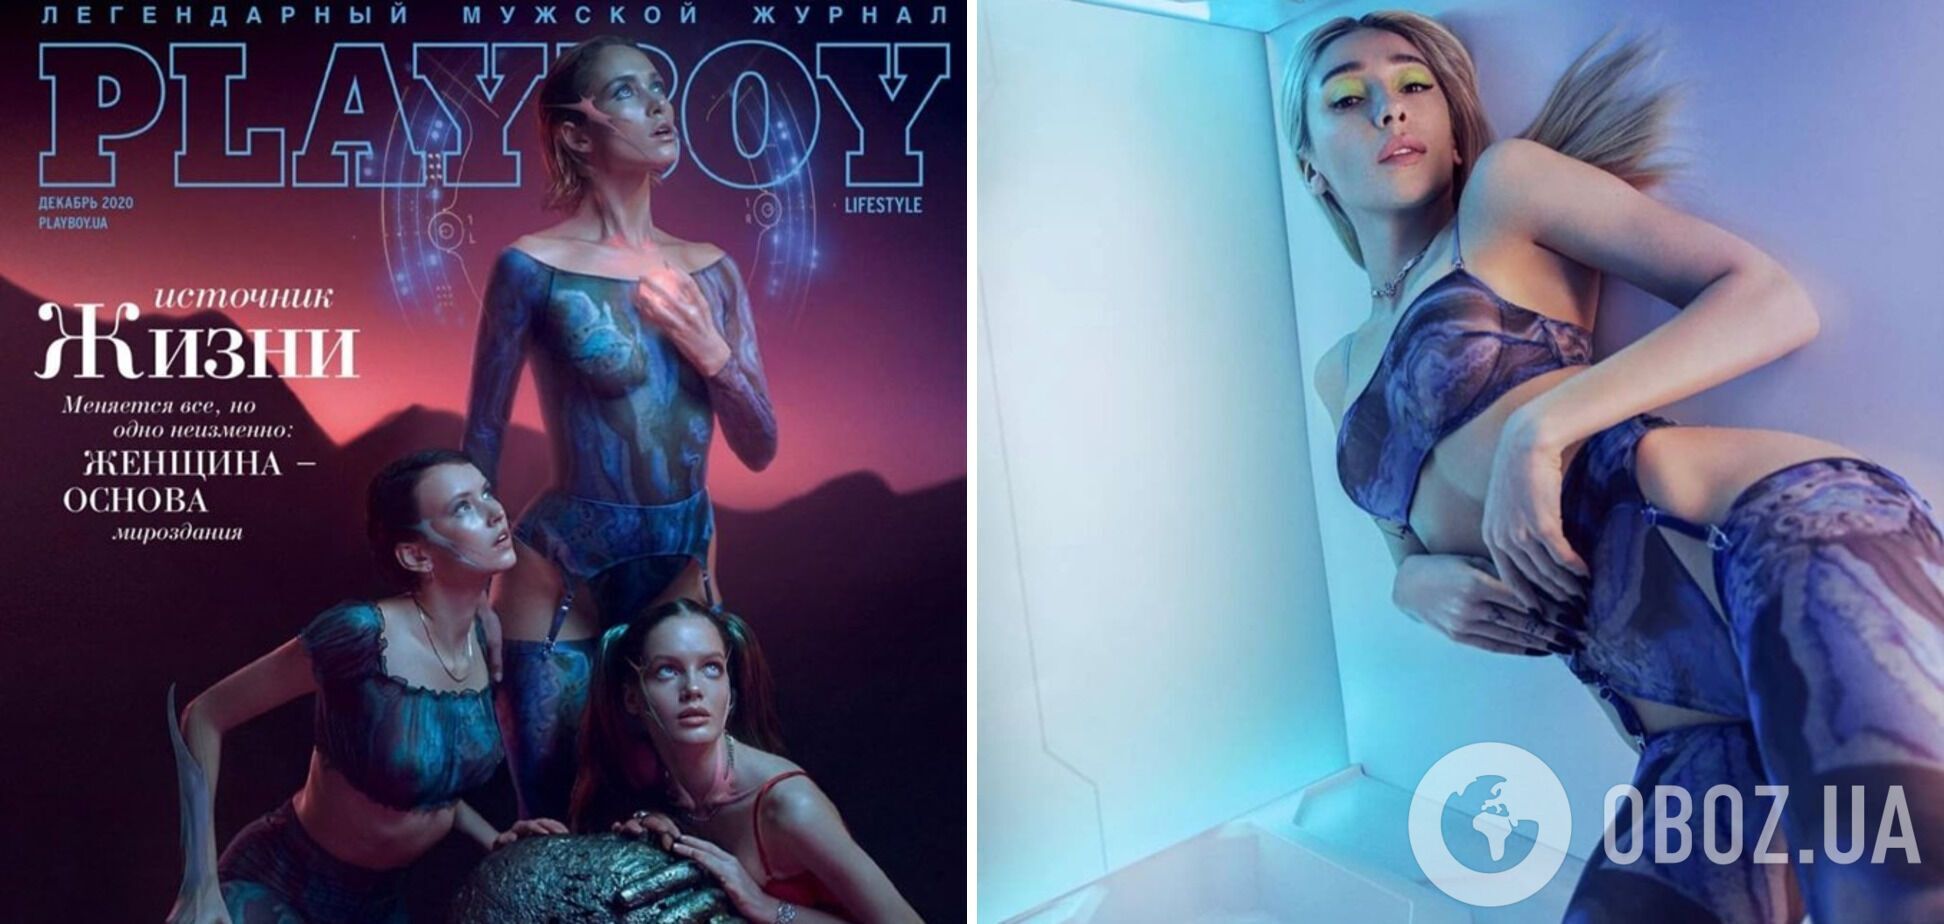 Слева украинская версия Playboy, а справа позирует Настя Ивлеева